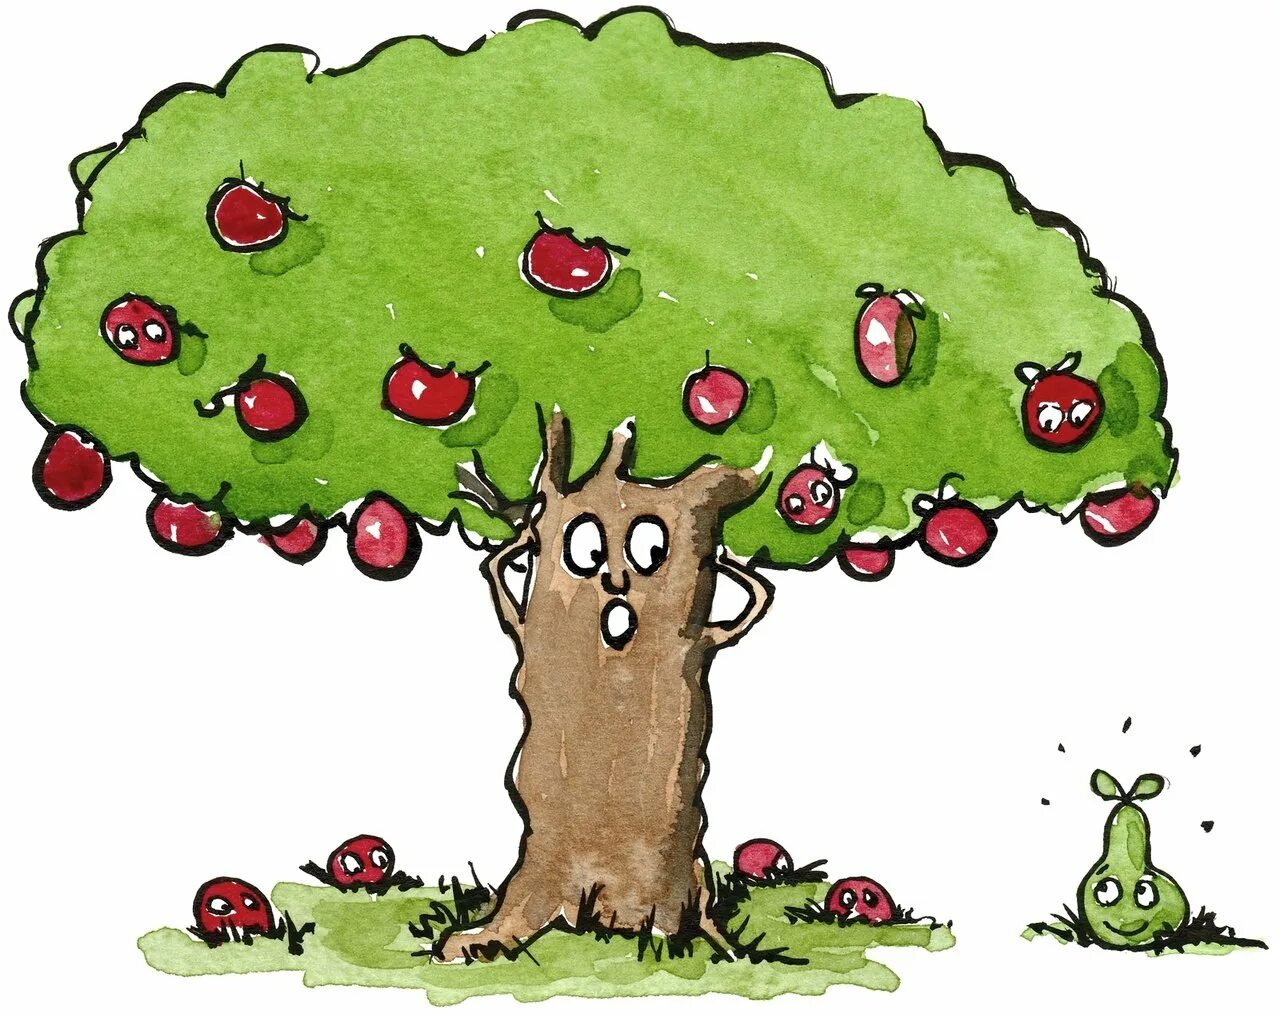 Яблоко от яблони недалеко падает. Яблоко от яблоньки недалеко падает. Яблоки на дереве. Иллюстрация к поговорке яблоко от яблони недалеко падает.